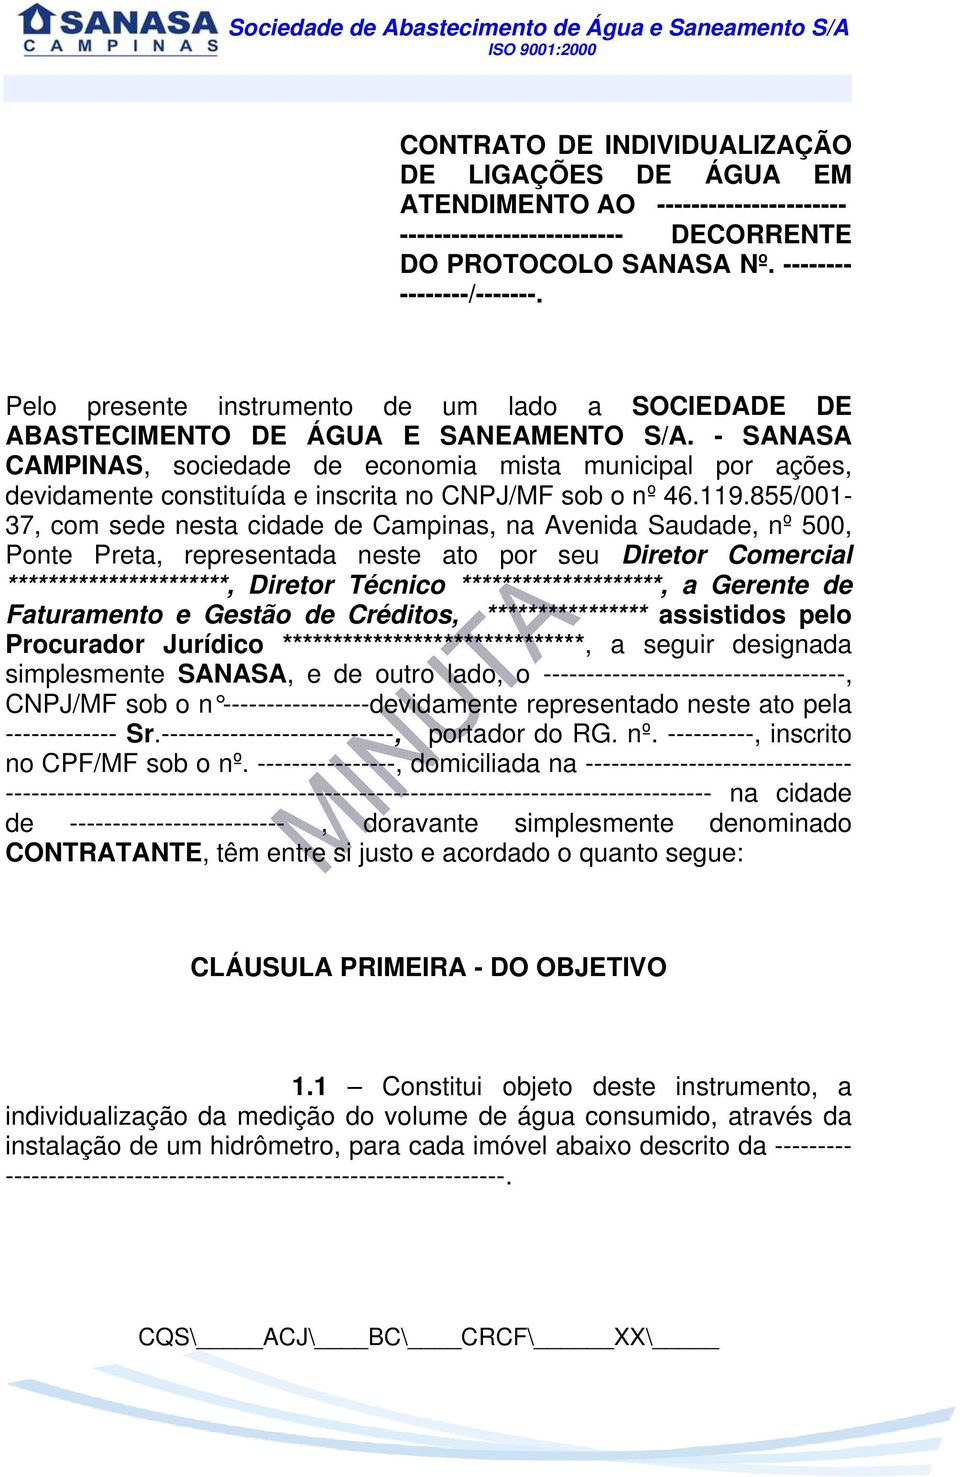 - SANASA CAMPINAS, sociedade de economia mista municipal por ações, devidamente constituída e inscrita no CNPJ/MF sob o nº 46.119.